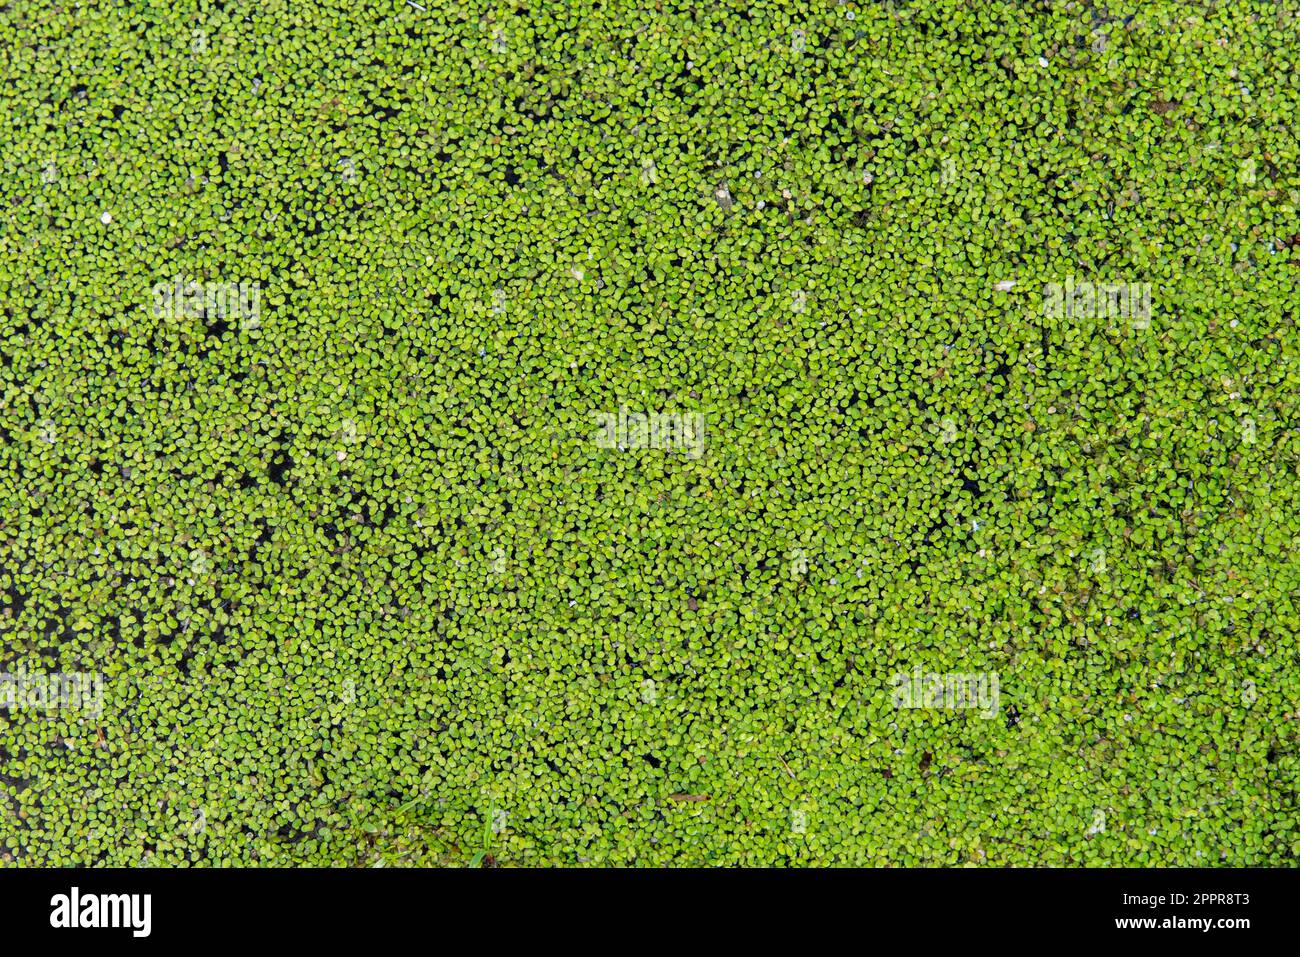 Lentejas verdes de agua, lemna, flotando en una charca, textura Stockfoto